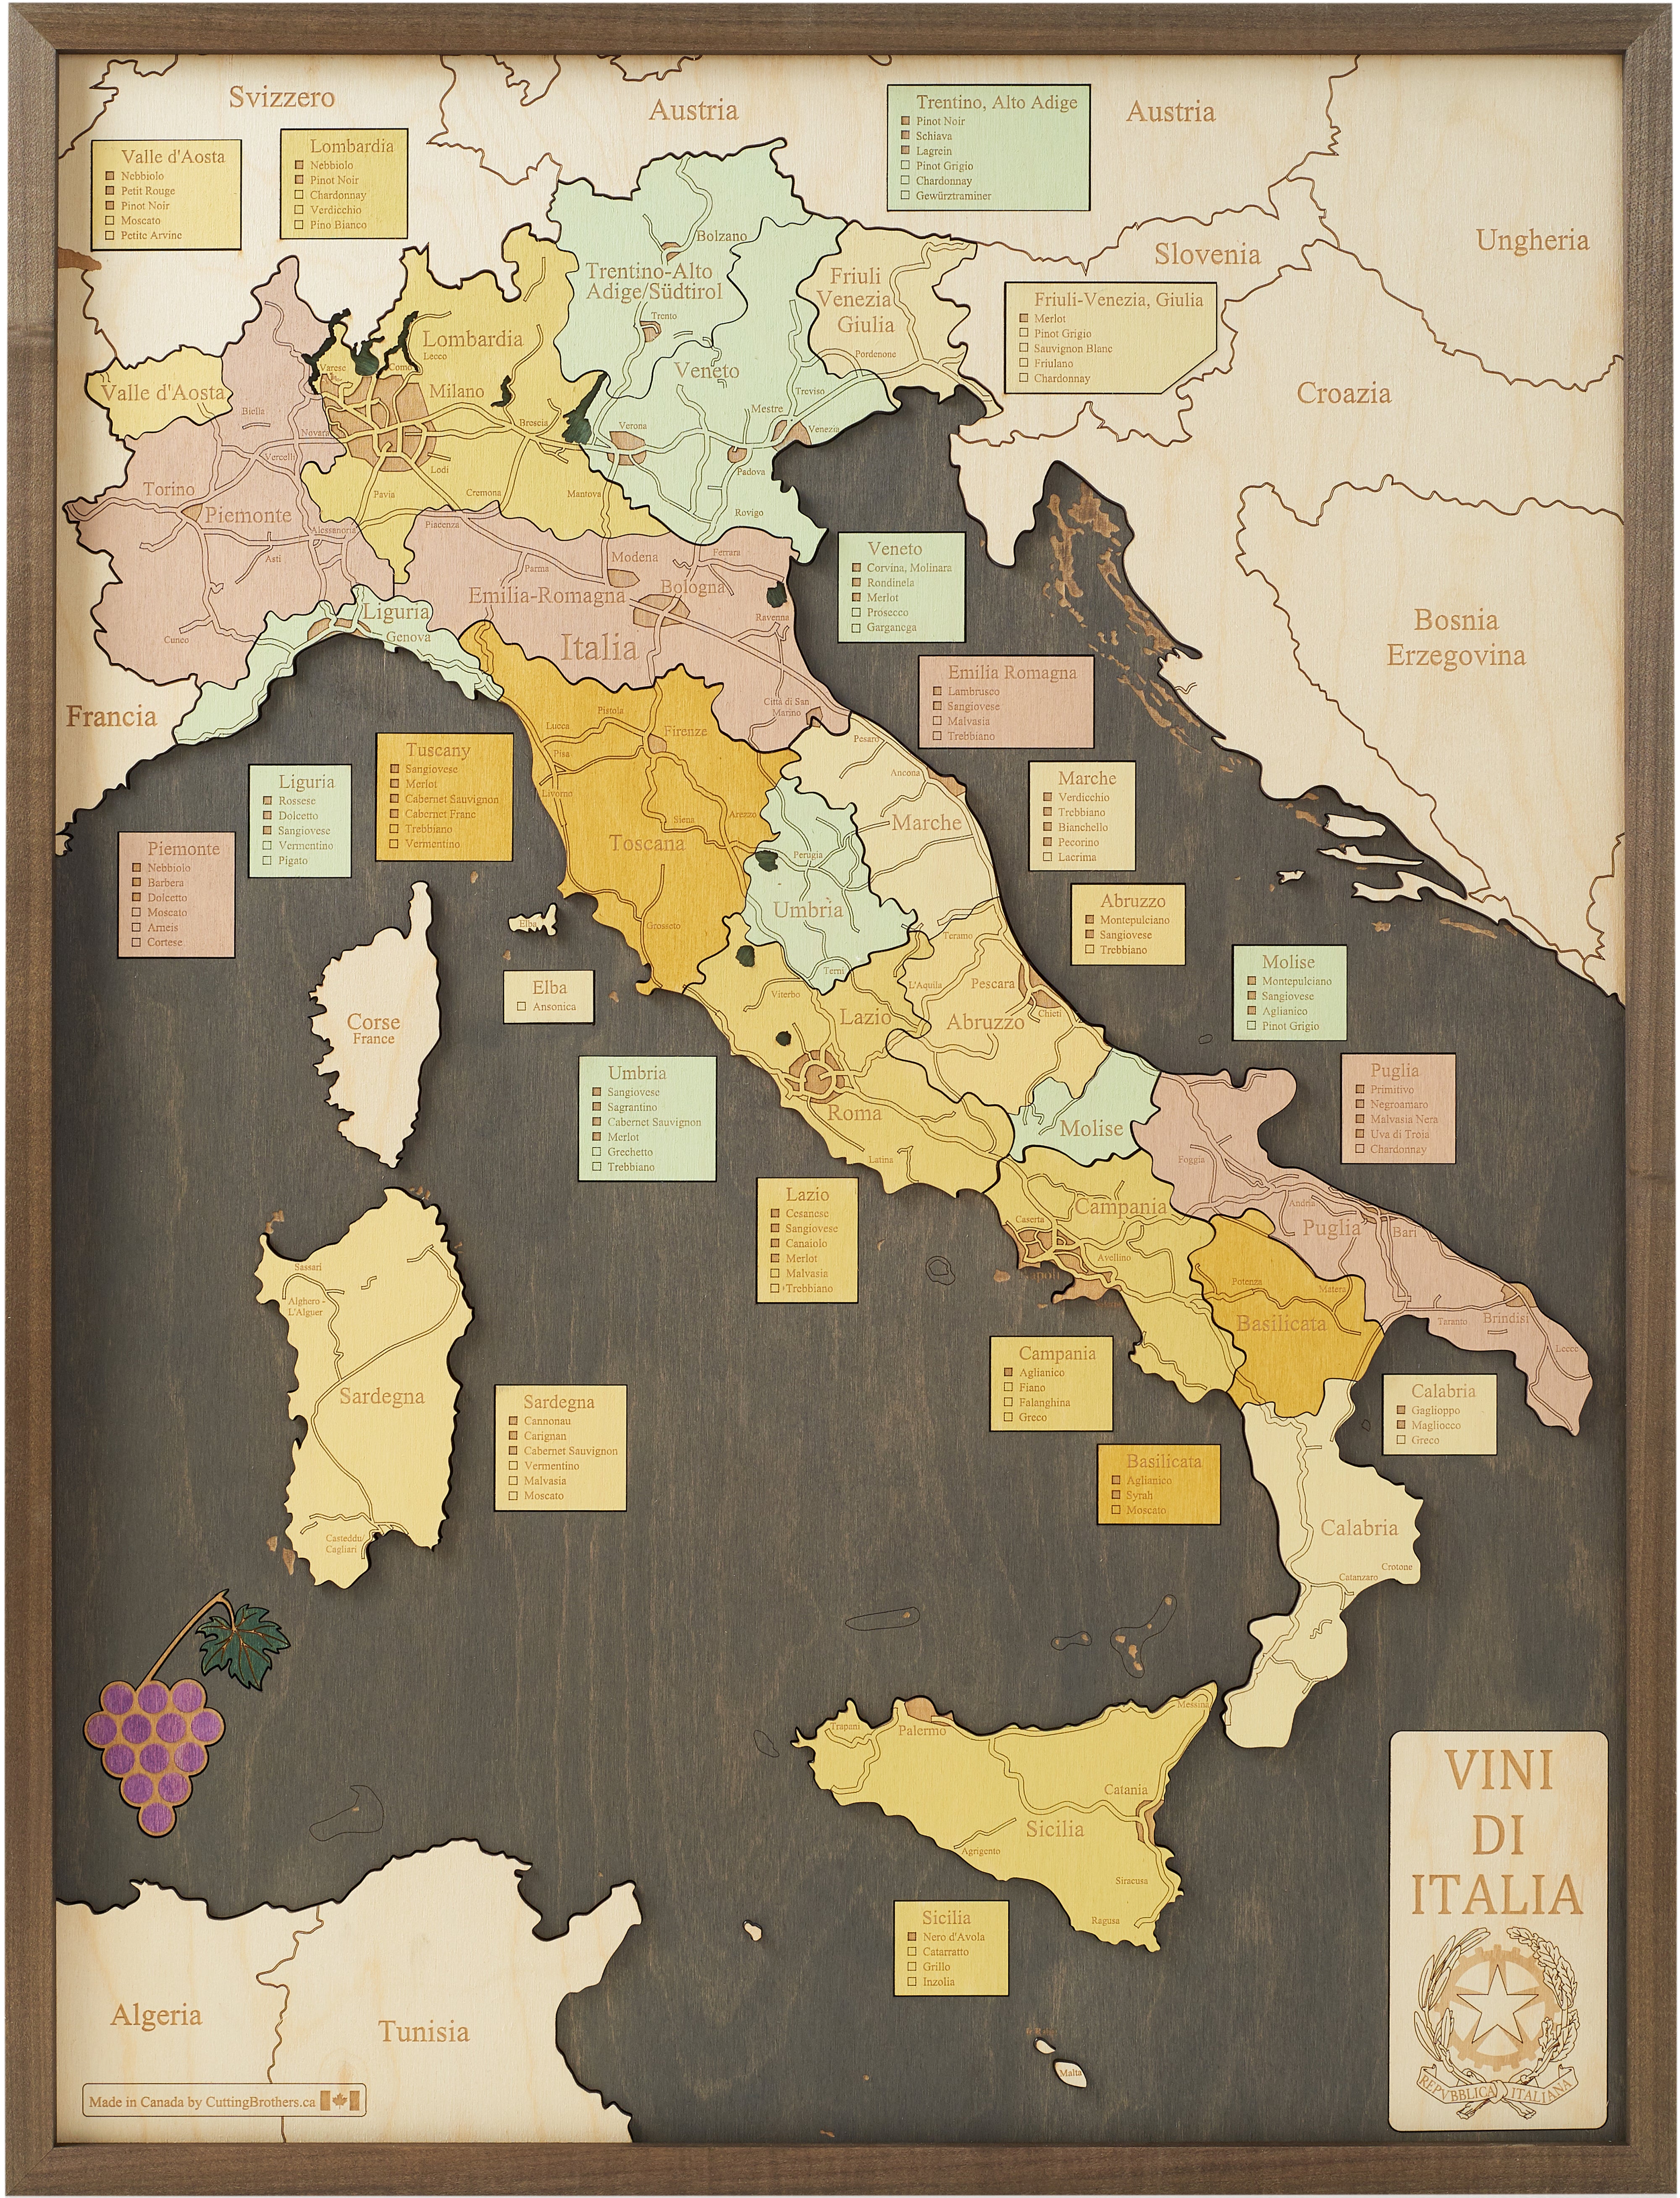 VINI DI ITALIA wine regions 3D wooden wall map - version L 